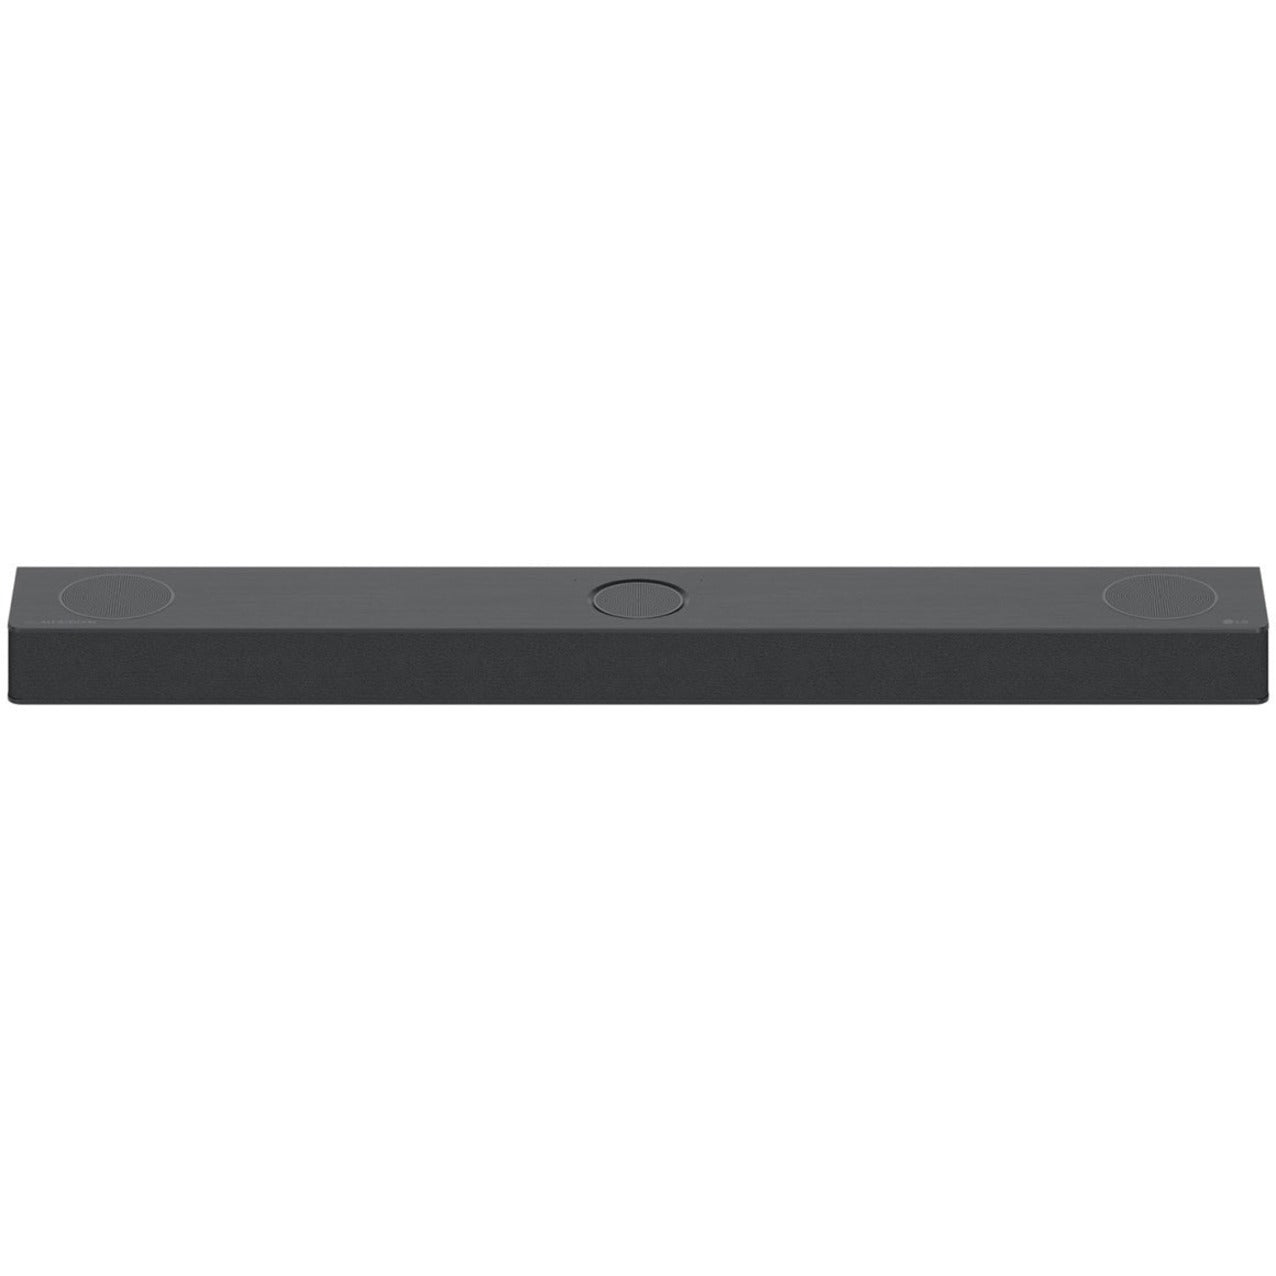 LG S80QY 3.1.3CH 480W Dolby Atmos Wi-Fi Soundbar (2022), Crystal Clear Clarity, Bass Reflex, Wall Mountable